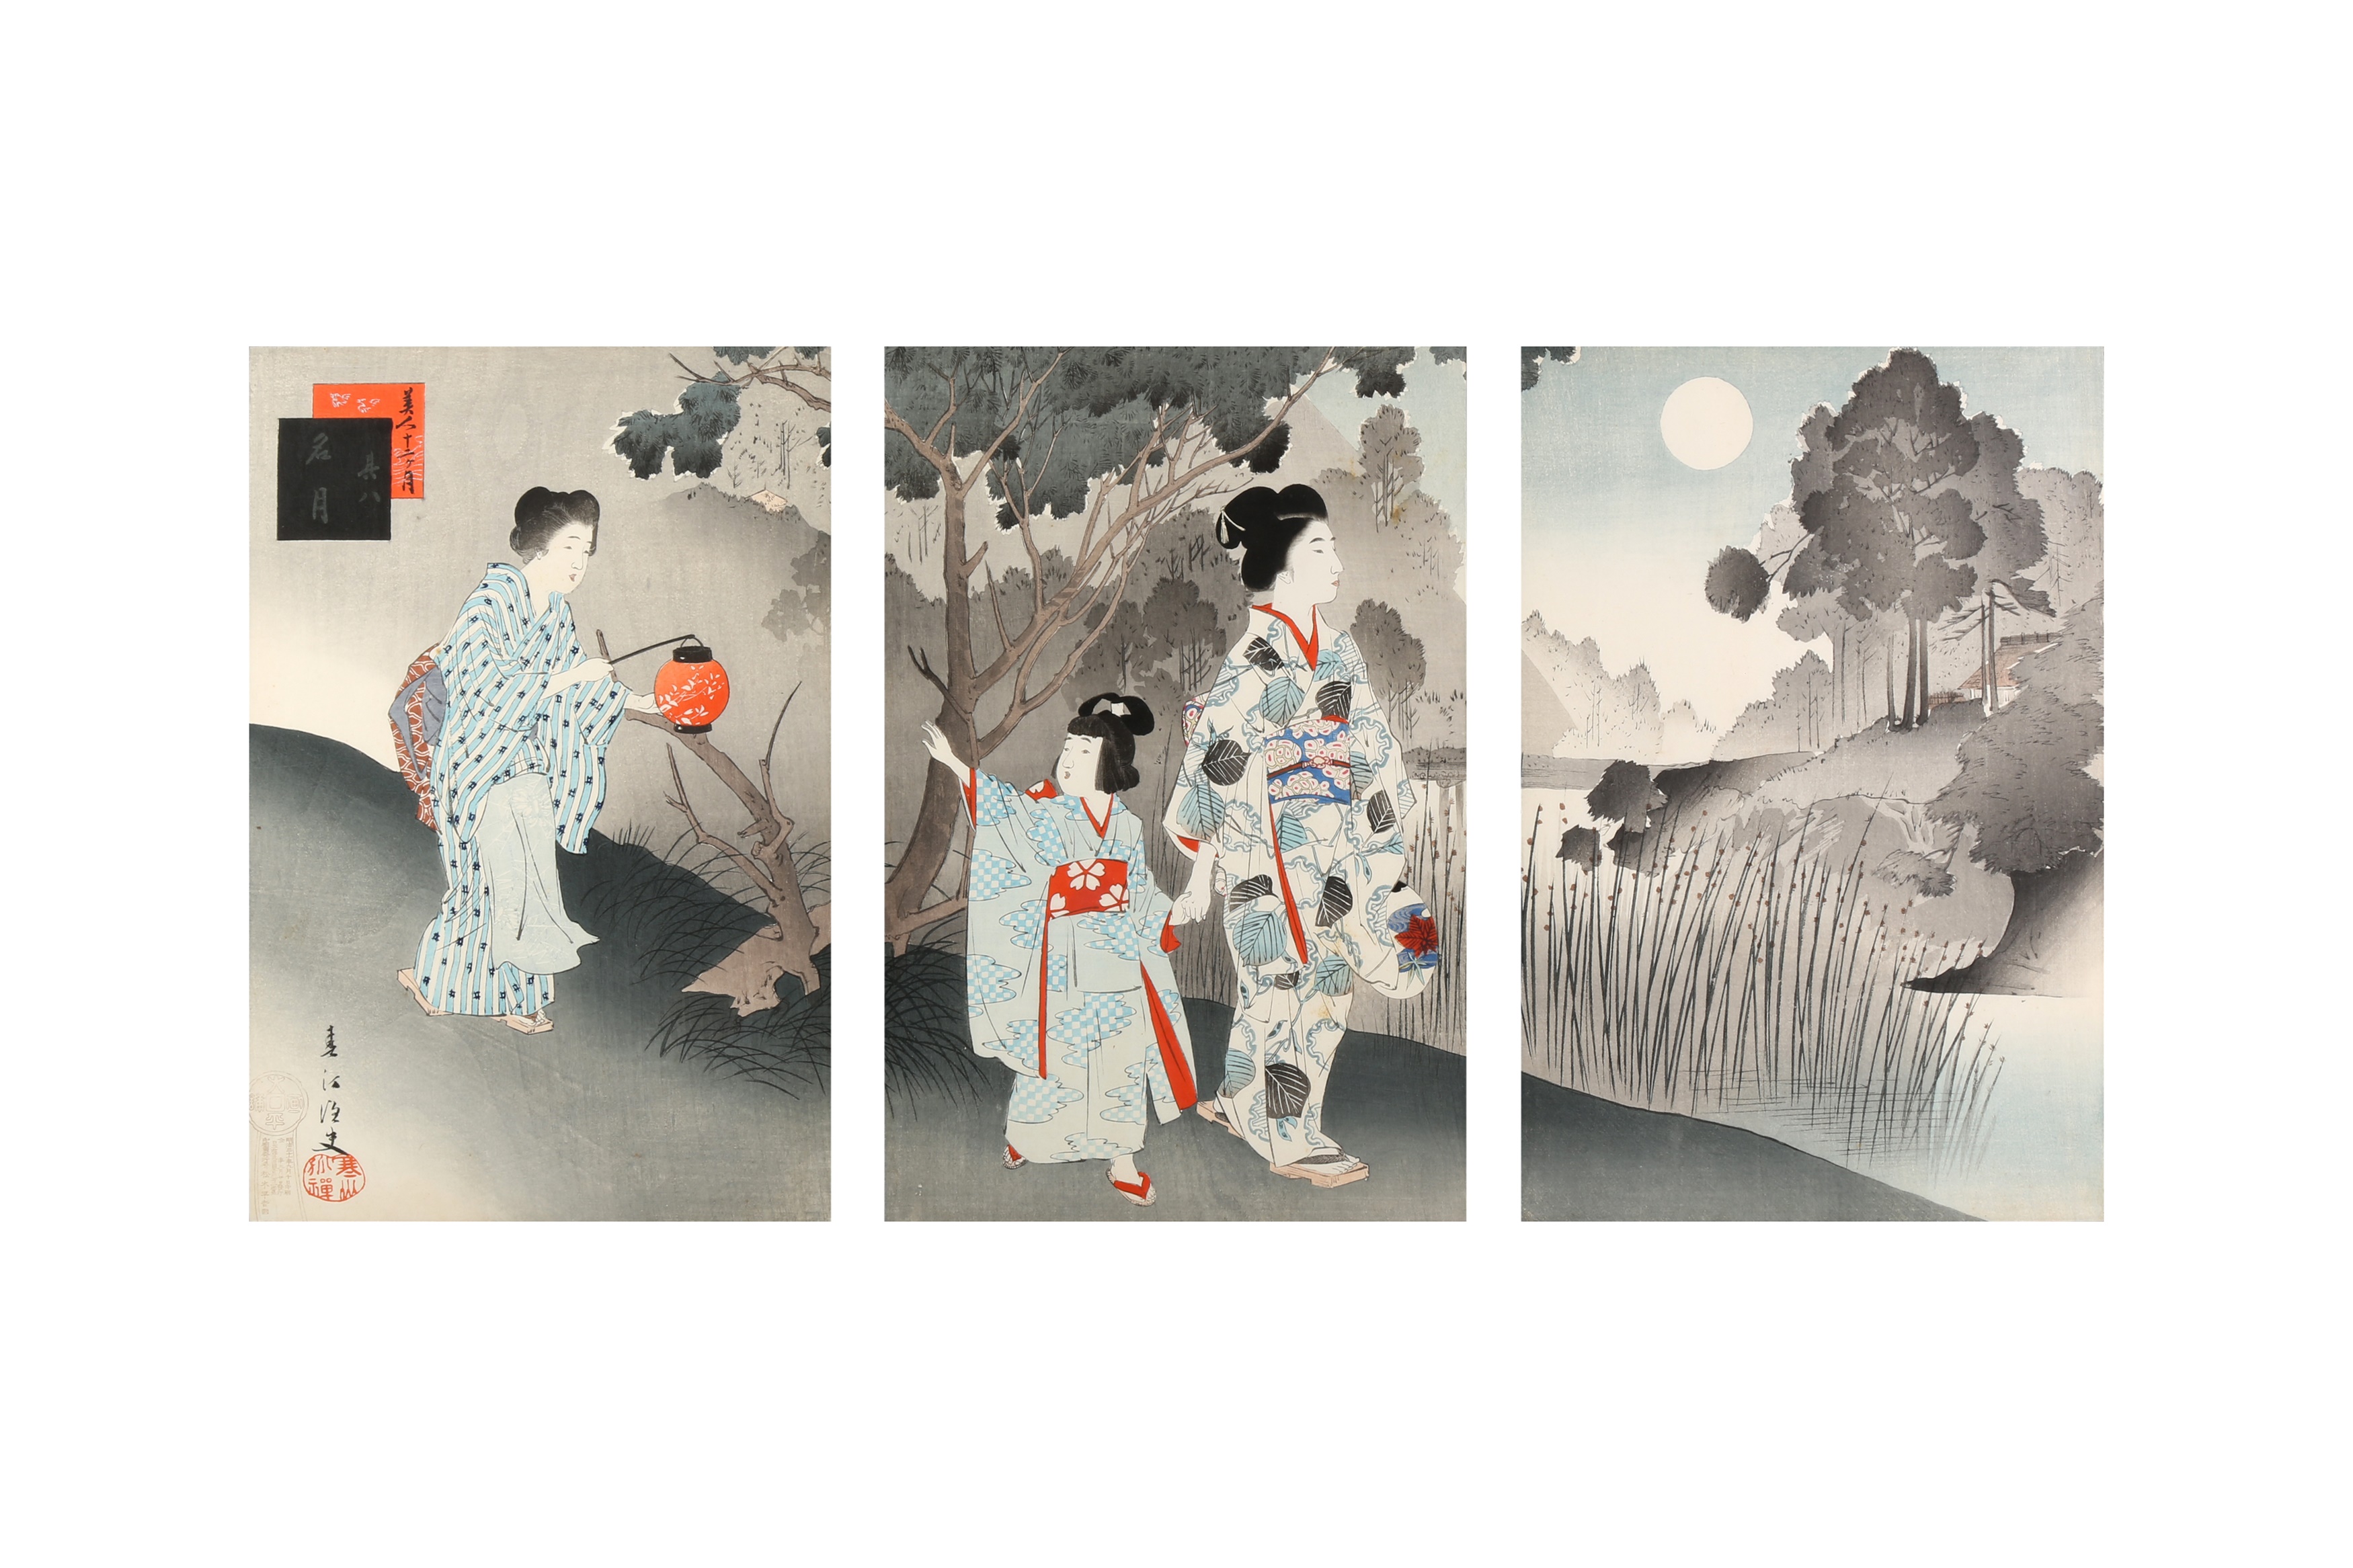 TSUKIOKA YOSHITOSHI (1797 – 1858), MIYAGAWA SHUNTEI (1873 – 1914) Two Japanese woodblock print tript - Image 2 of 23